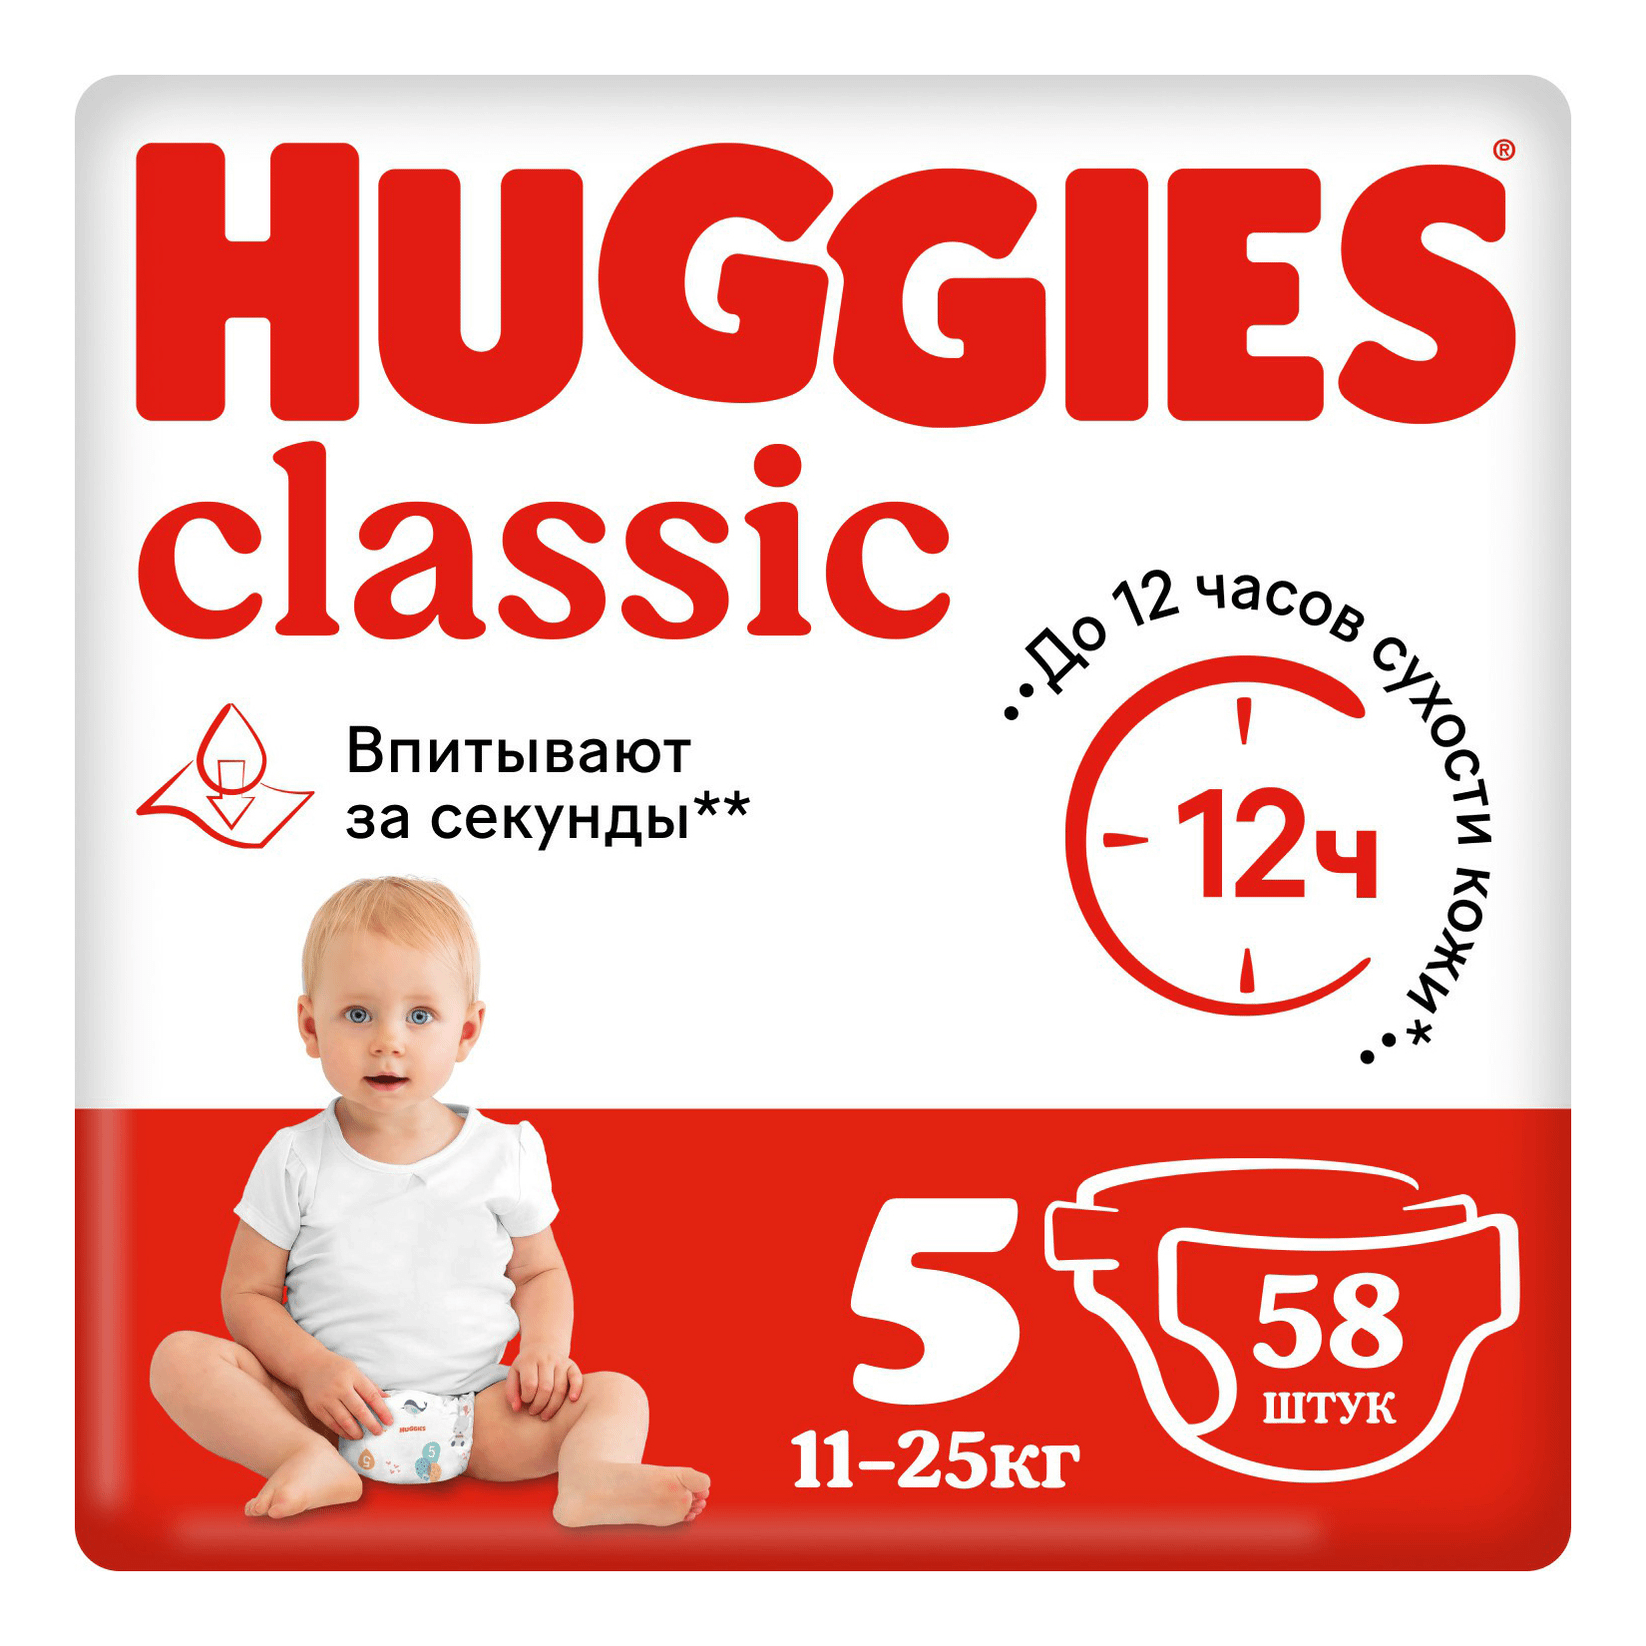 Подгузники Huggies Classic 5 (11-25 кг), 58 шт подгузники huggies classic 3 4 9 кг 58 шт